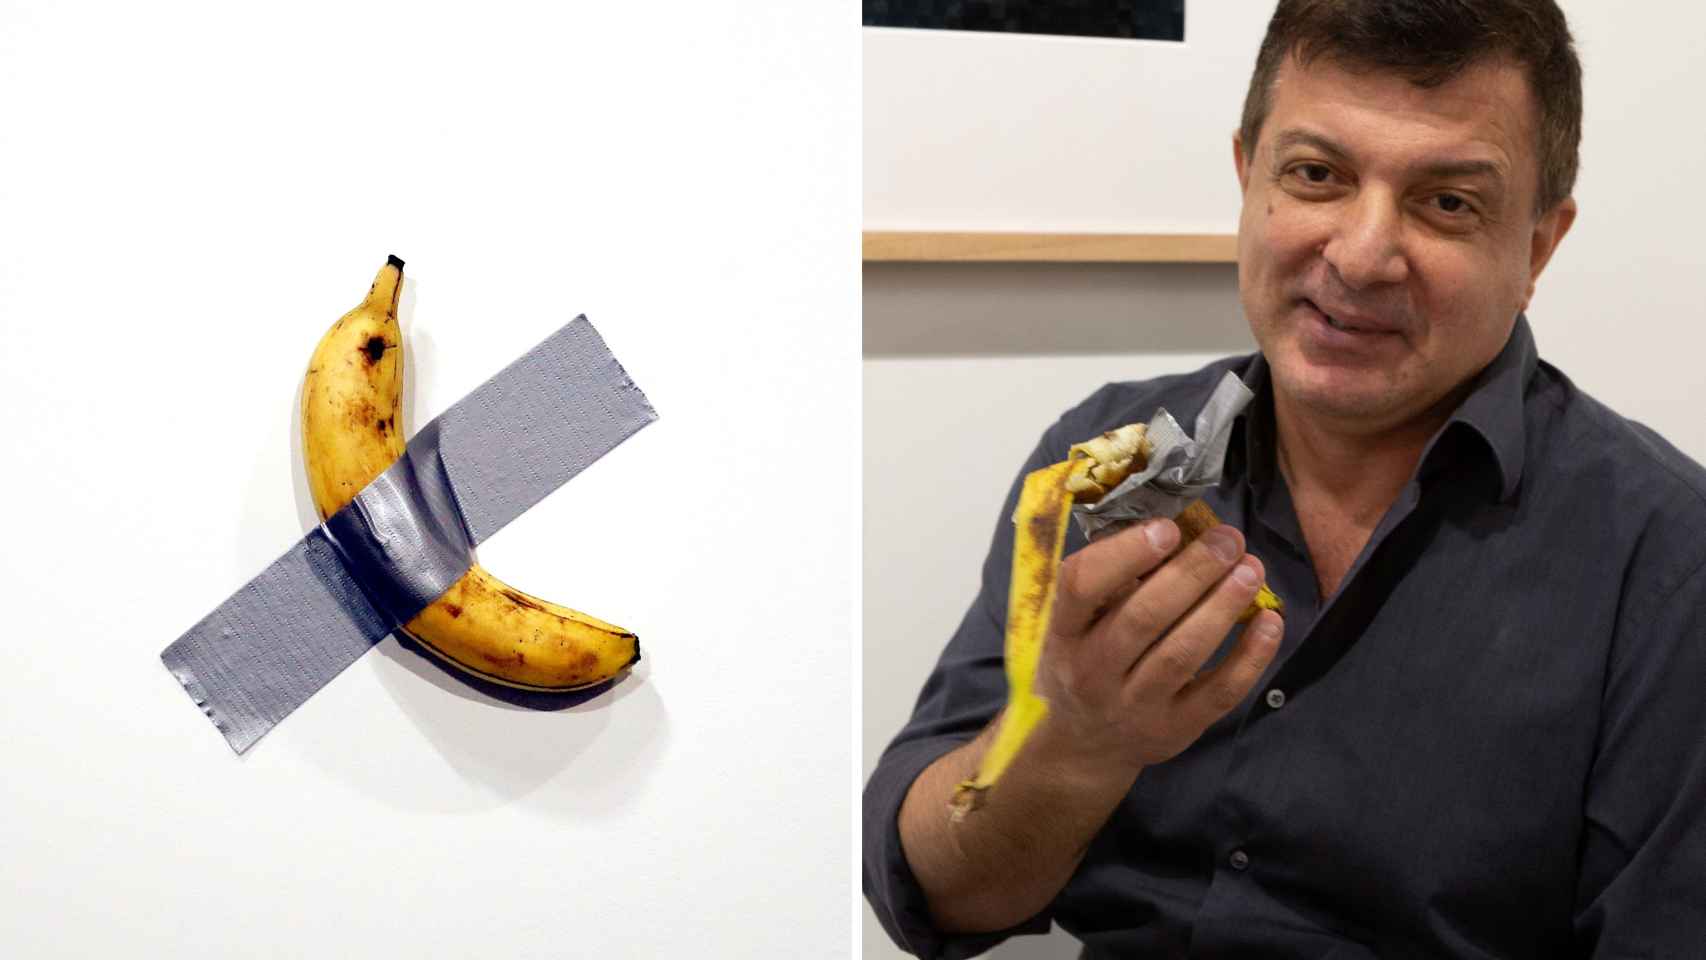 Expone un plátano con cinta adhesiva, vende la obra por 120.000 dólares y otro artista se come